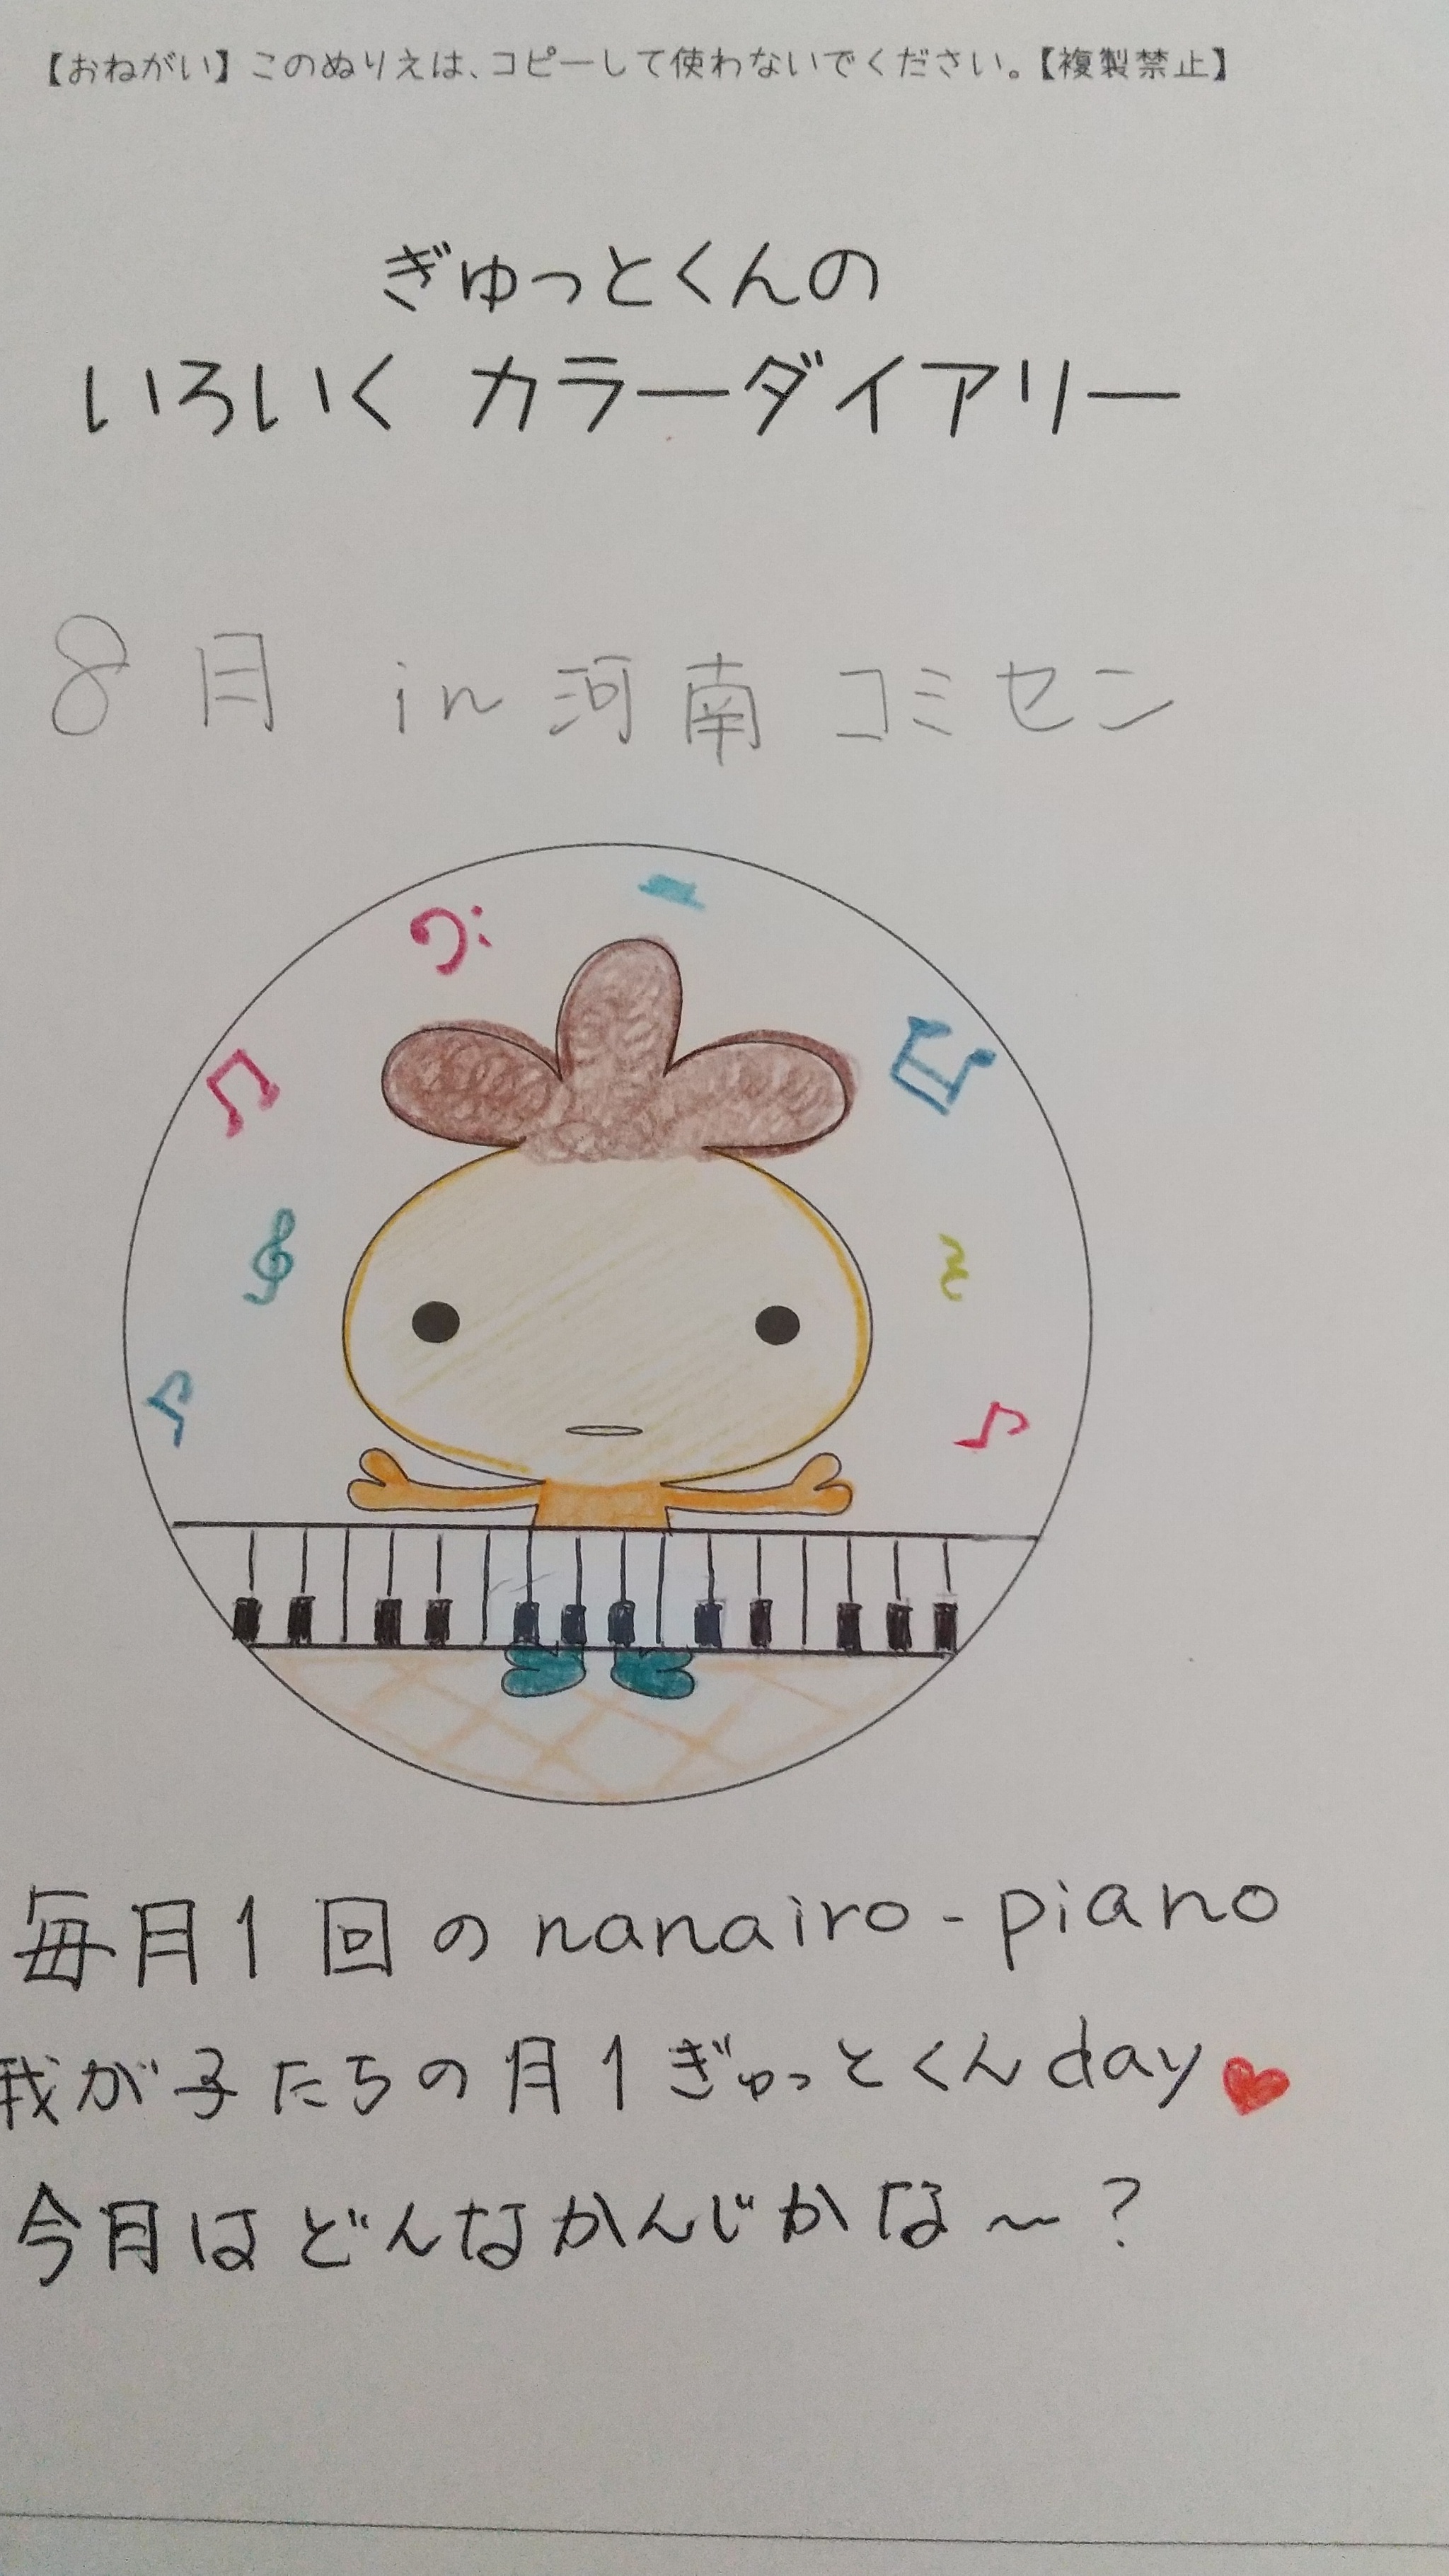 nanairo-pianoで色育